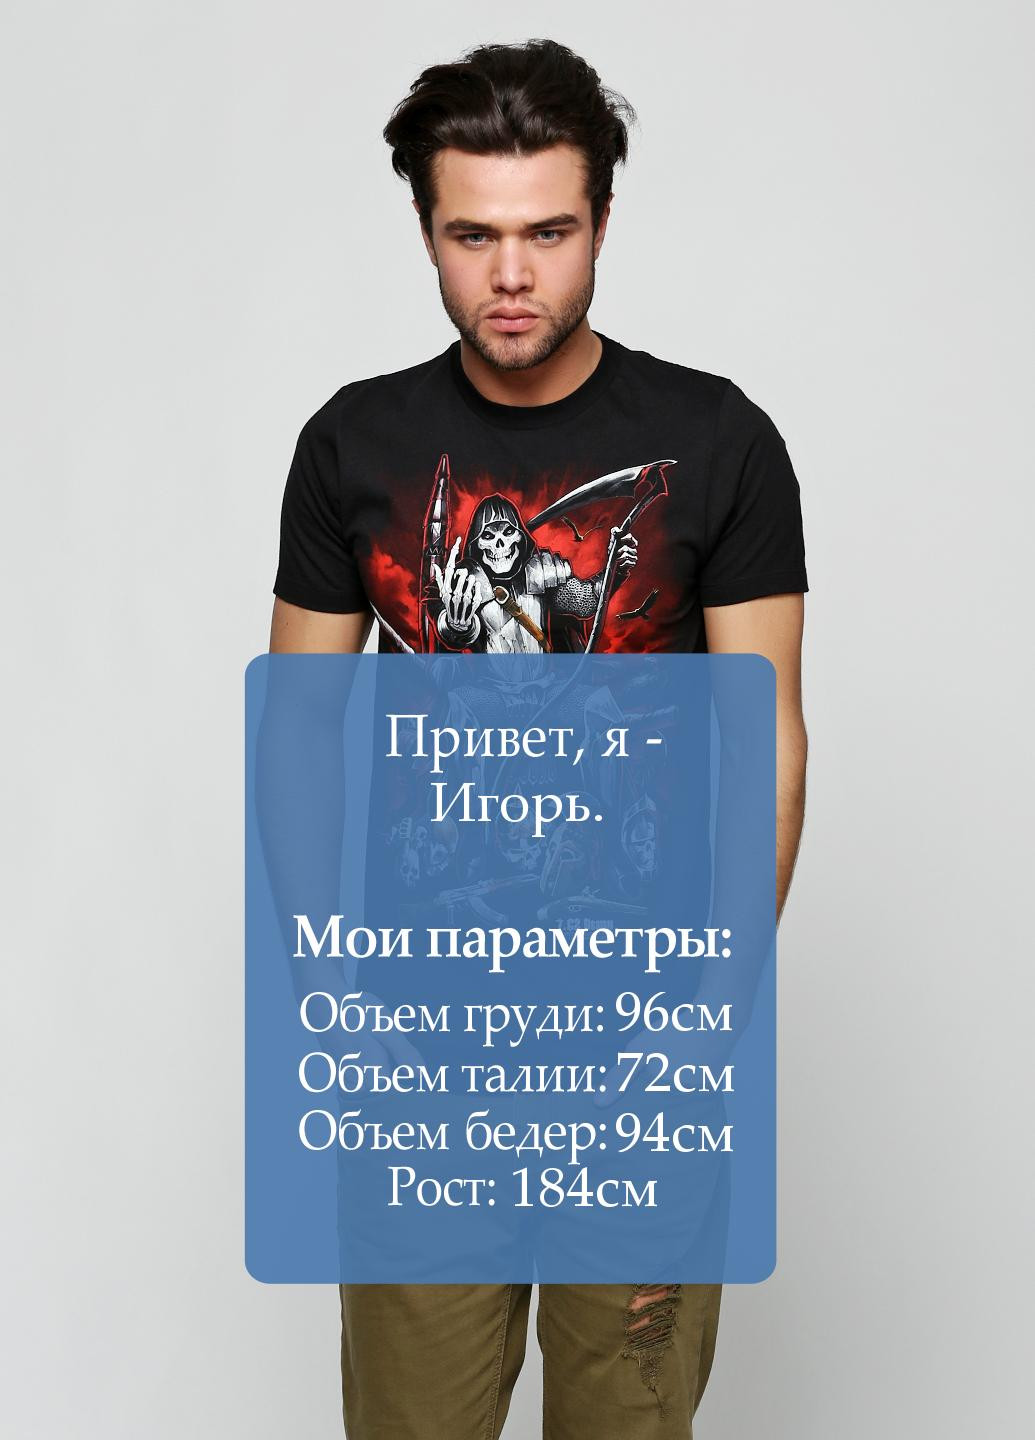 Черная летняя футболка 7.62 Design